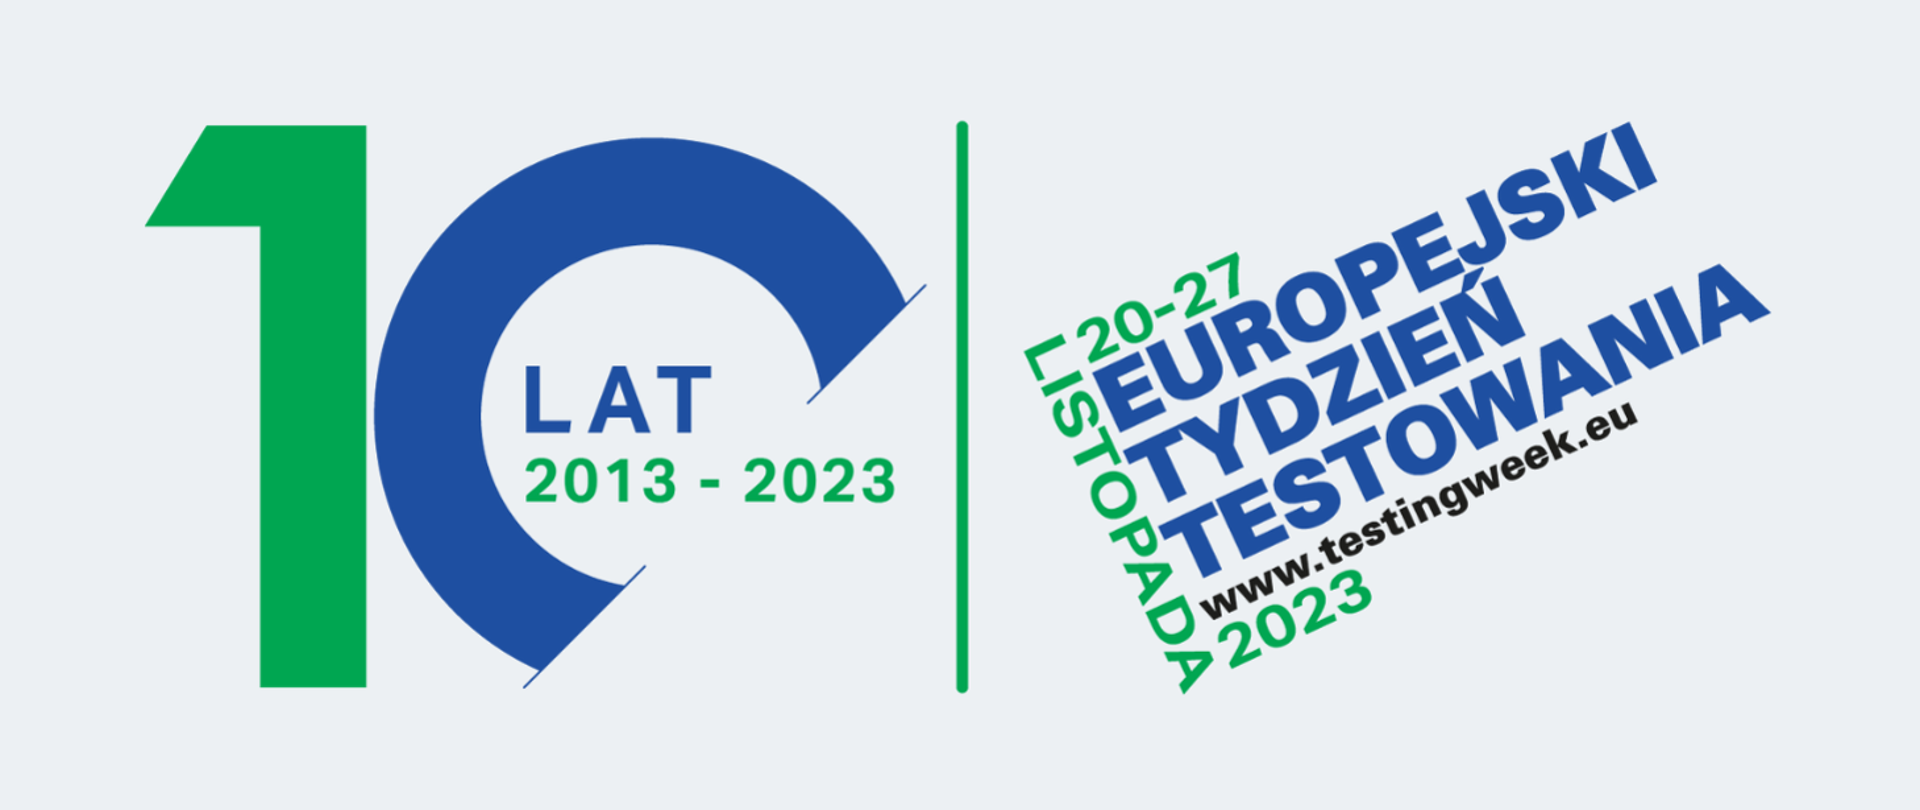 zielono niebieski z lewej strony10 lat 2013-2023, z prawej strony Europejski tydzień testowania 20-27 listopada 2023